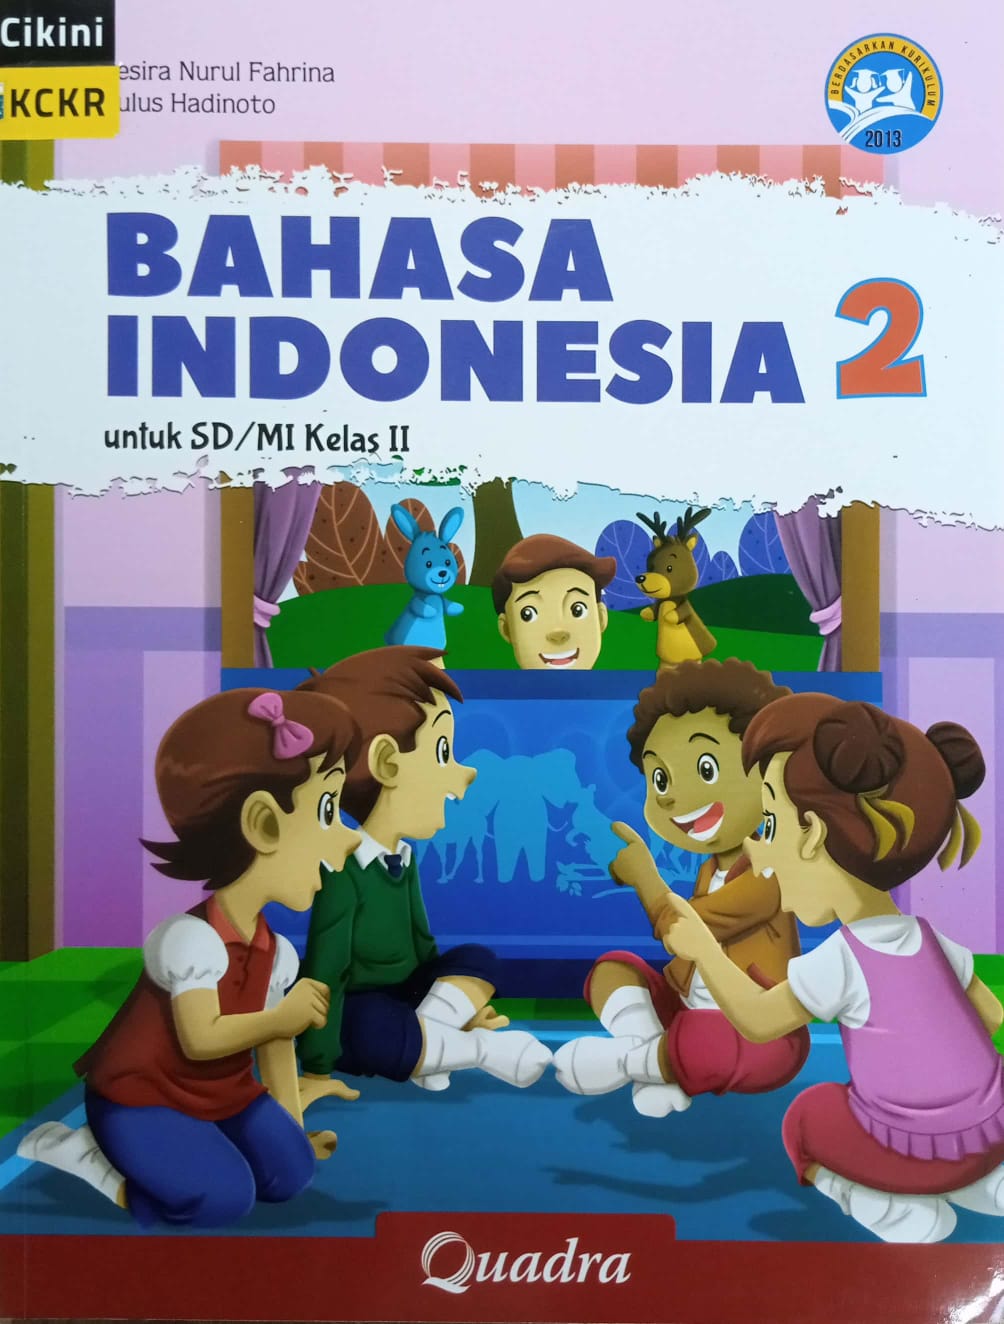 Bahasa Indonesia 2 untuk SD/MI Kelas II